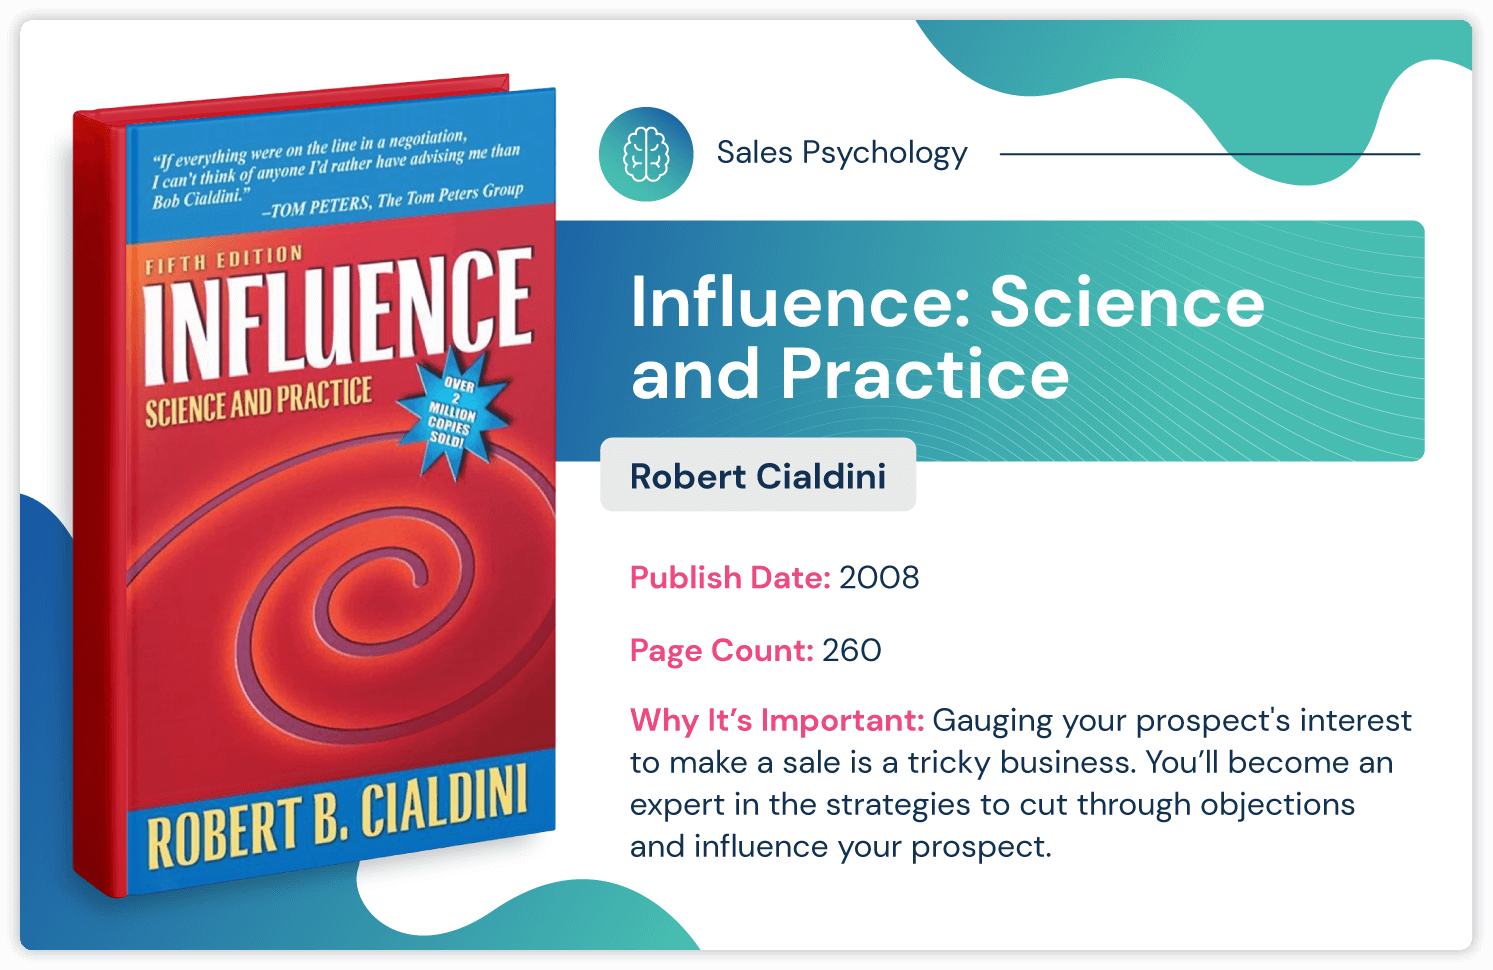 Robert Cialdini'nin satış stratejisi ile nasıl etkileneceğini anlatan "Influence: Science and Practice" adlı satış psikolojisi kitabı; 2008'de yayınlandı ve 260 sayfa uzunluğunda.